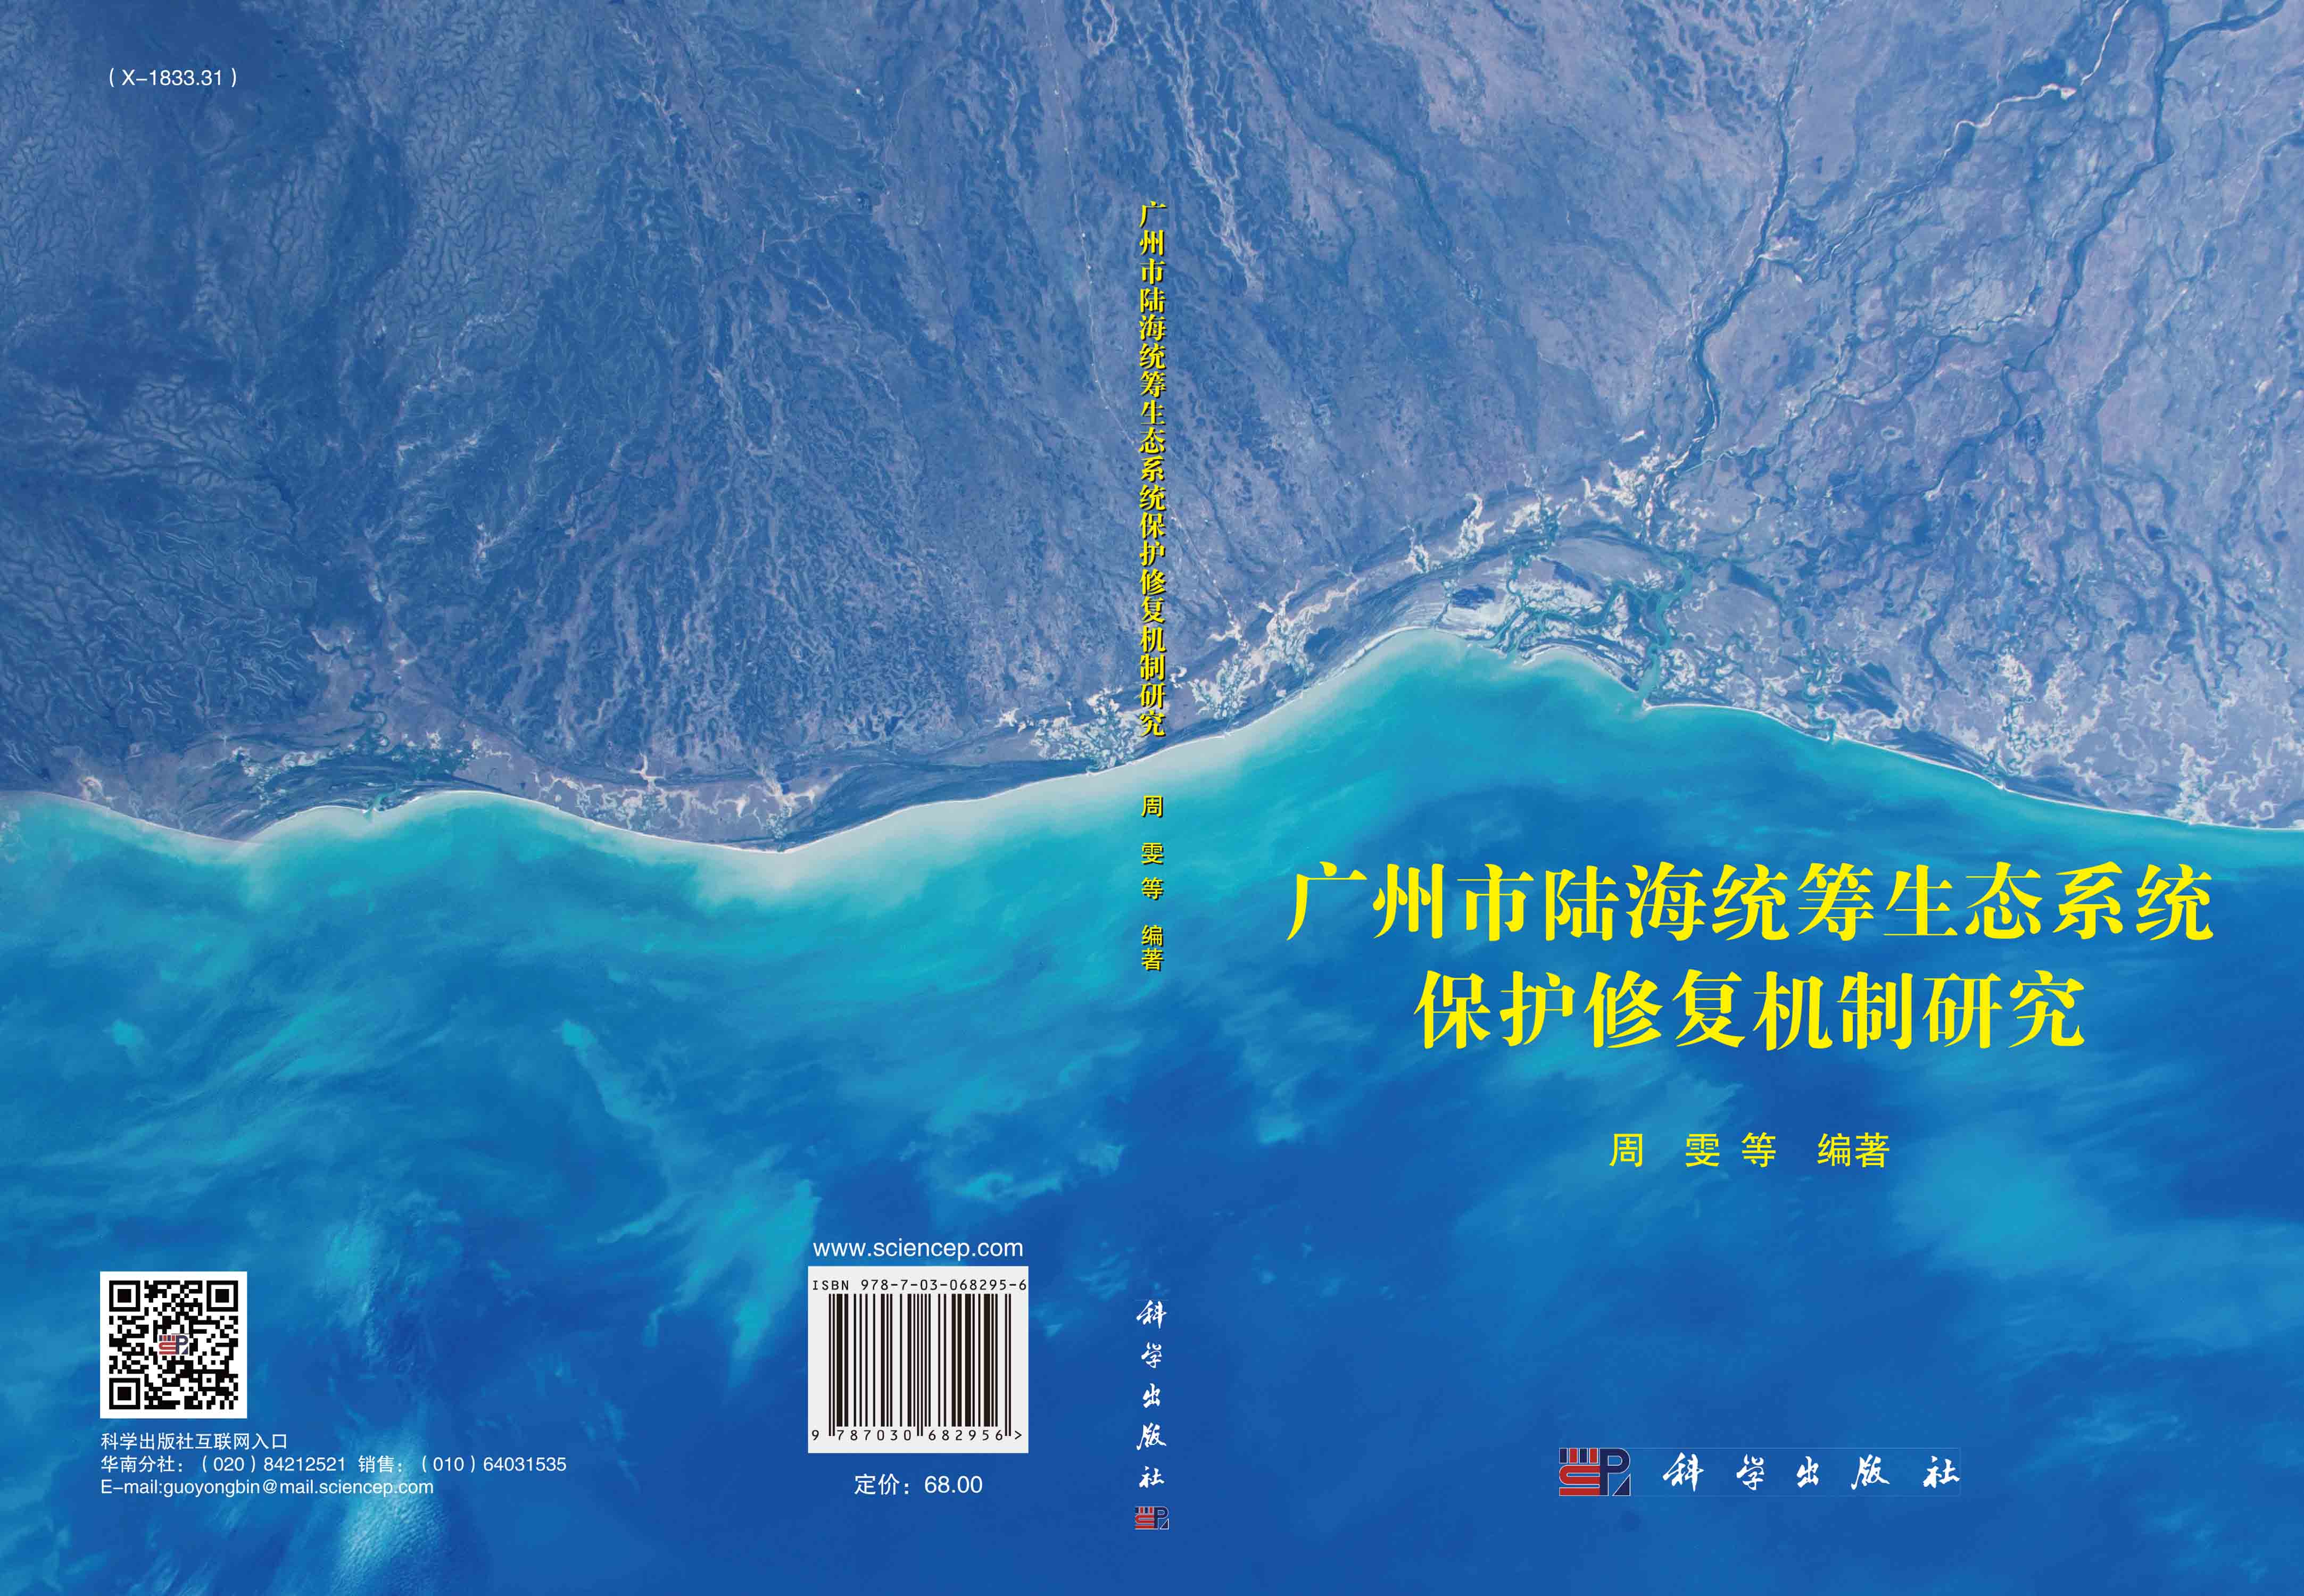 广州市陆海统筹生态系统保护修复机制研究